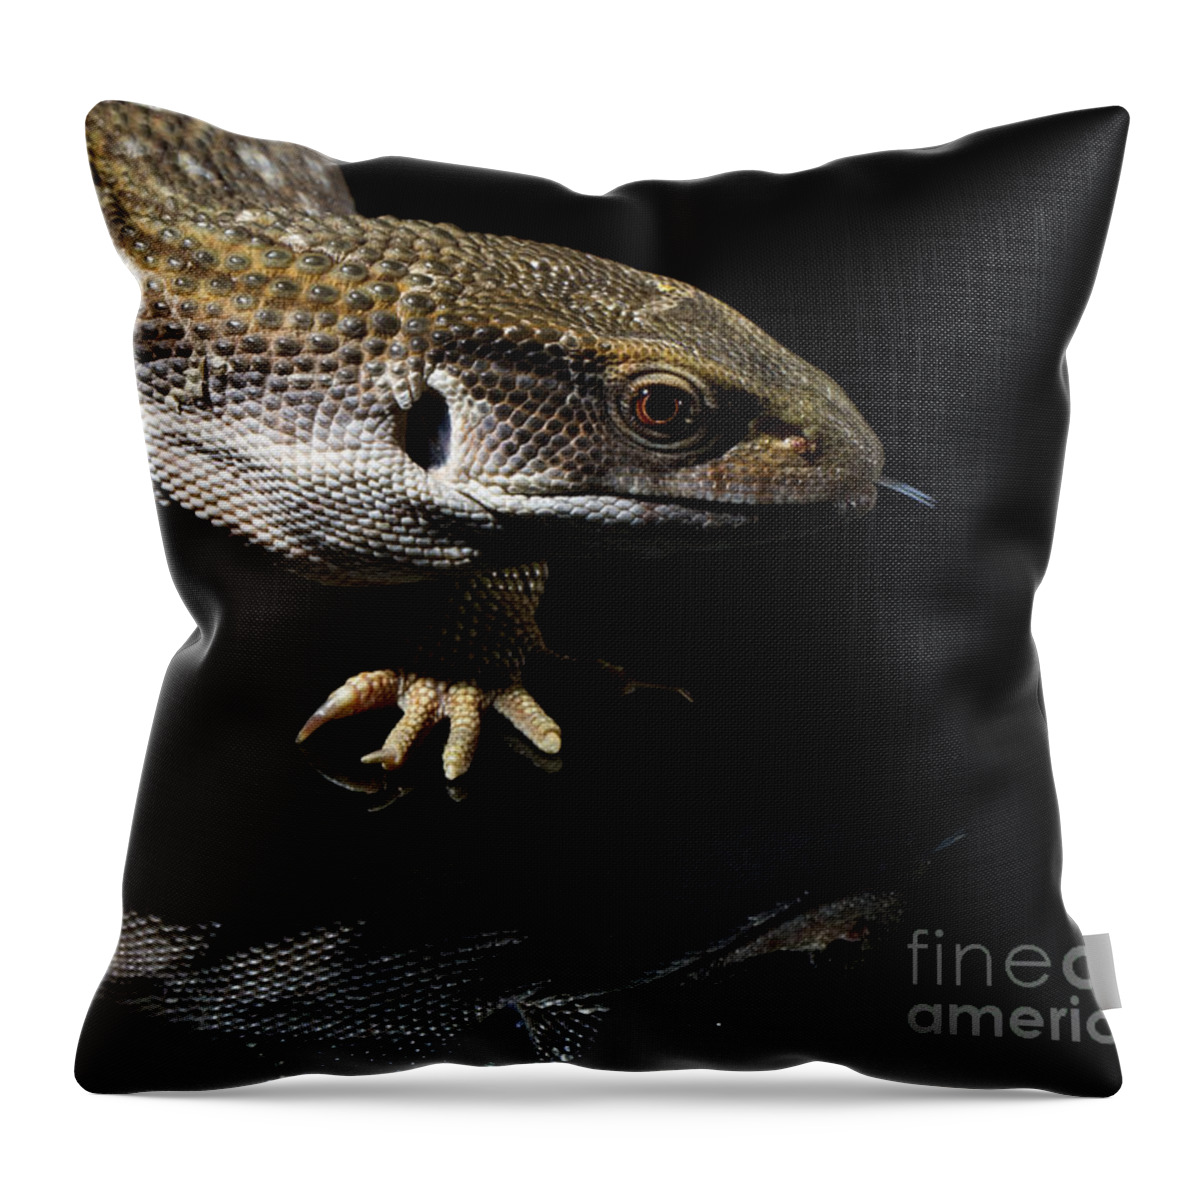 Lizards Throw Pillow featuring the photograph Lizards #1 by Gunnar Orn Arnason